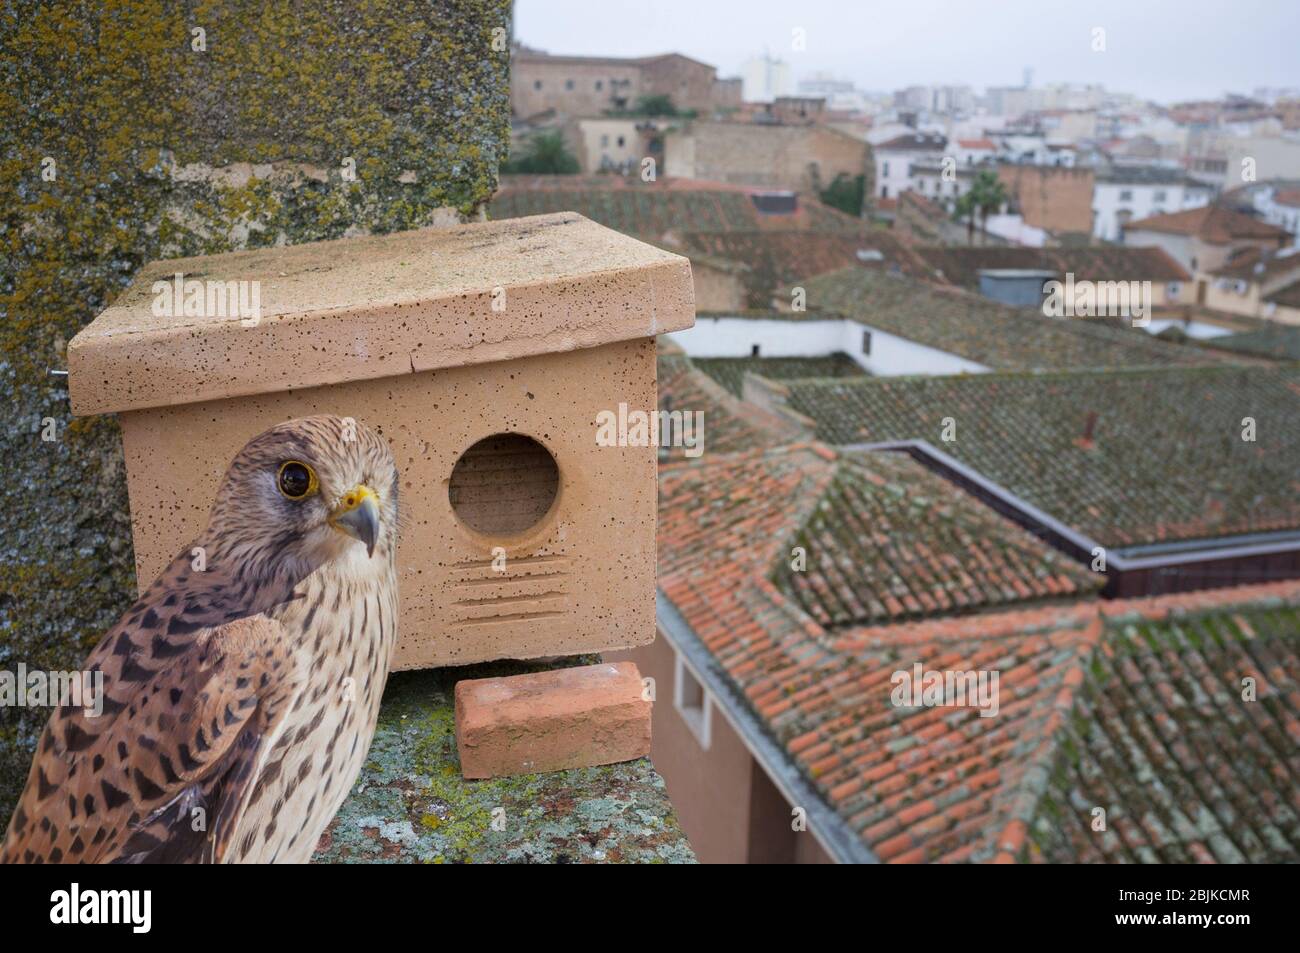 Nest boxe al tetto monumentale edificio a Caceres, Spagna. Questi rifugi sono collocati per migliorare i siti di nidificazione del minore kestrel. Foto Stock